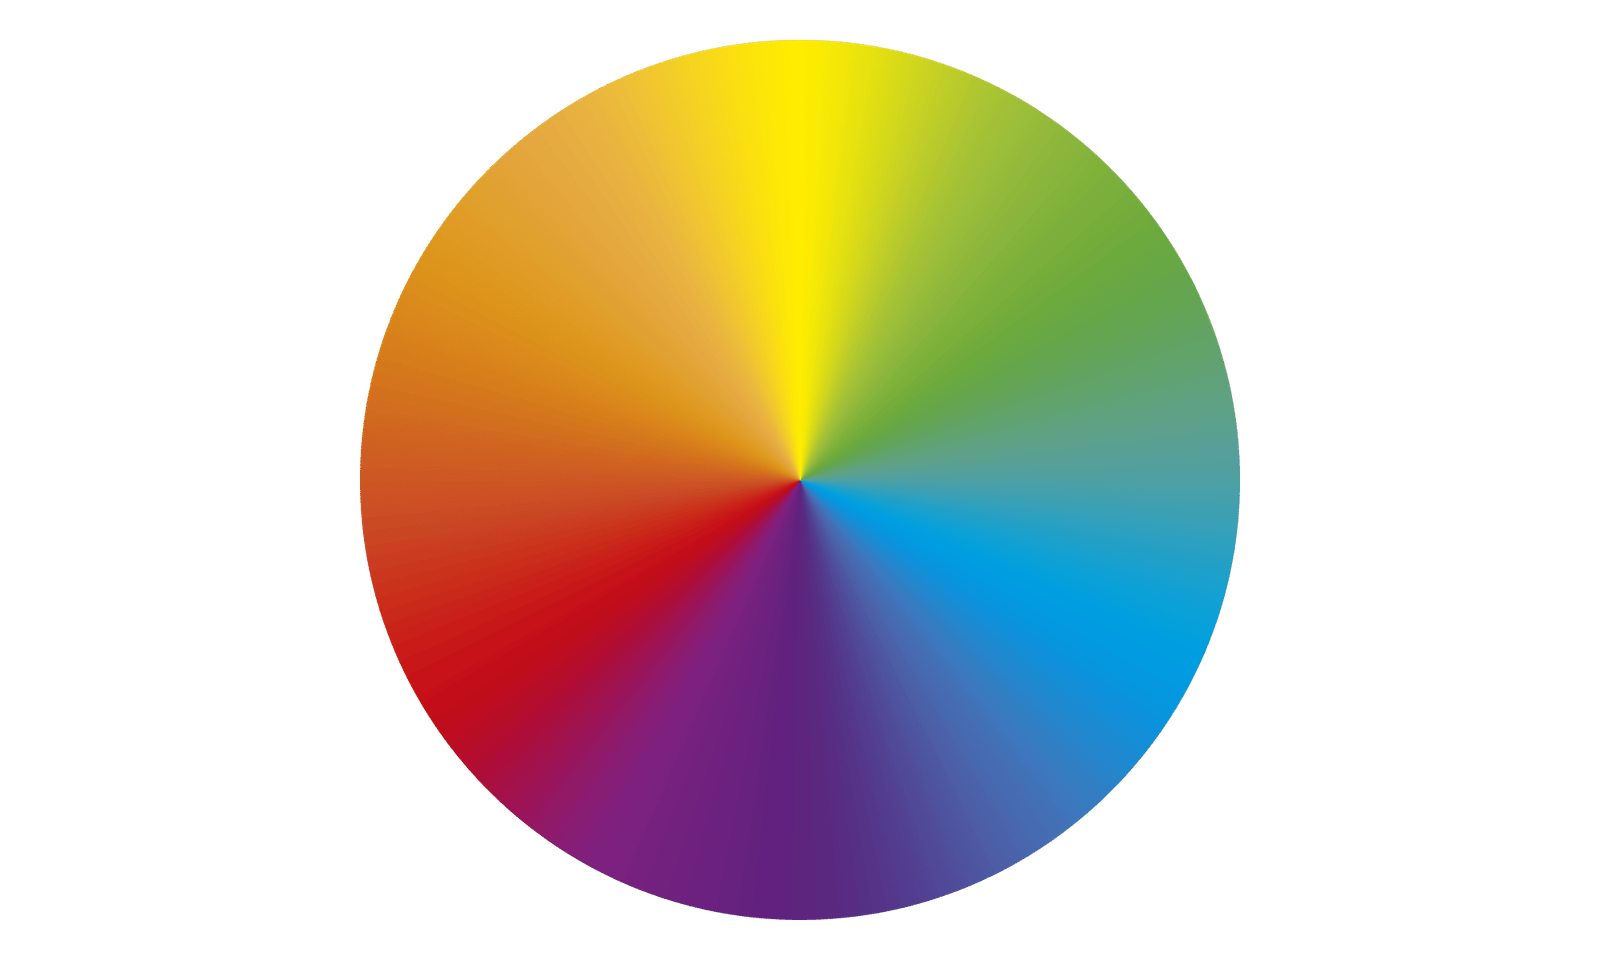 Disco de cores em degradê, onde as cores estão mescladas com transição suave entre elas